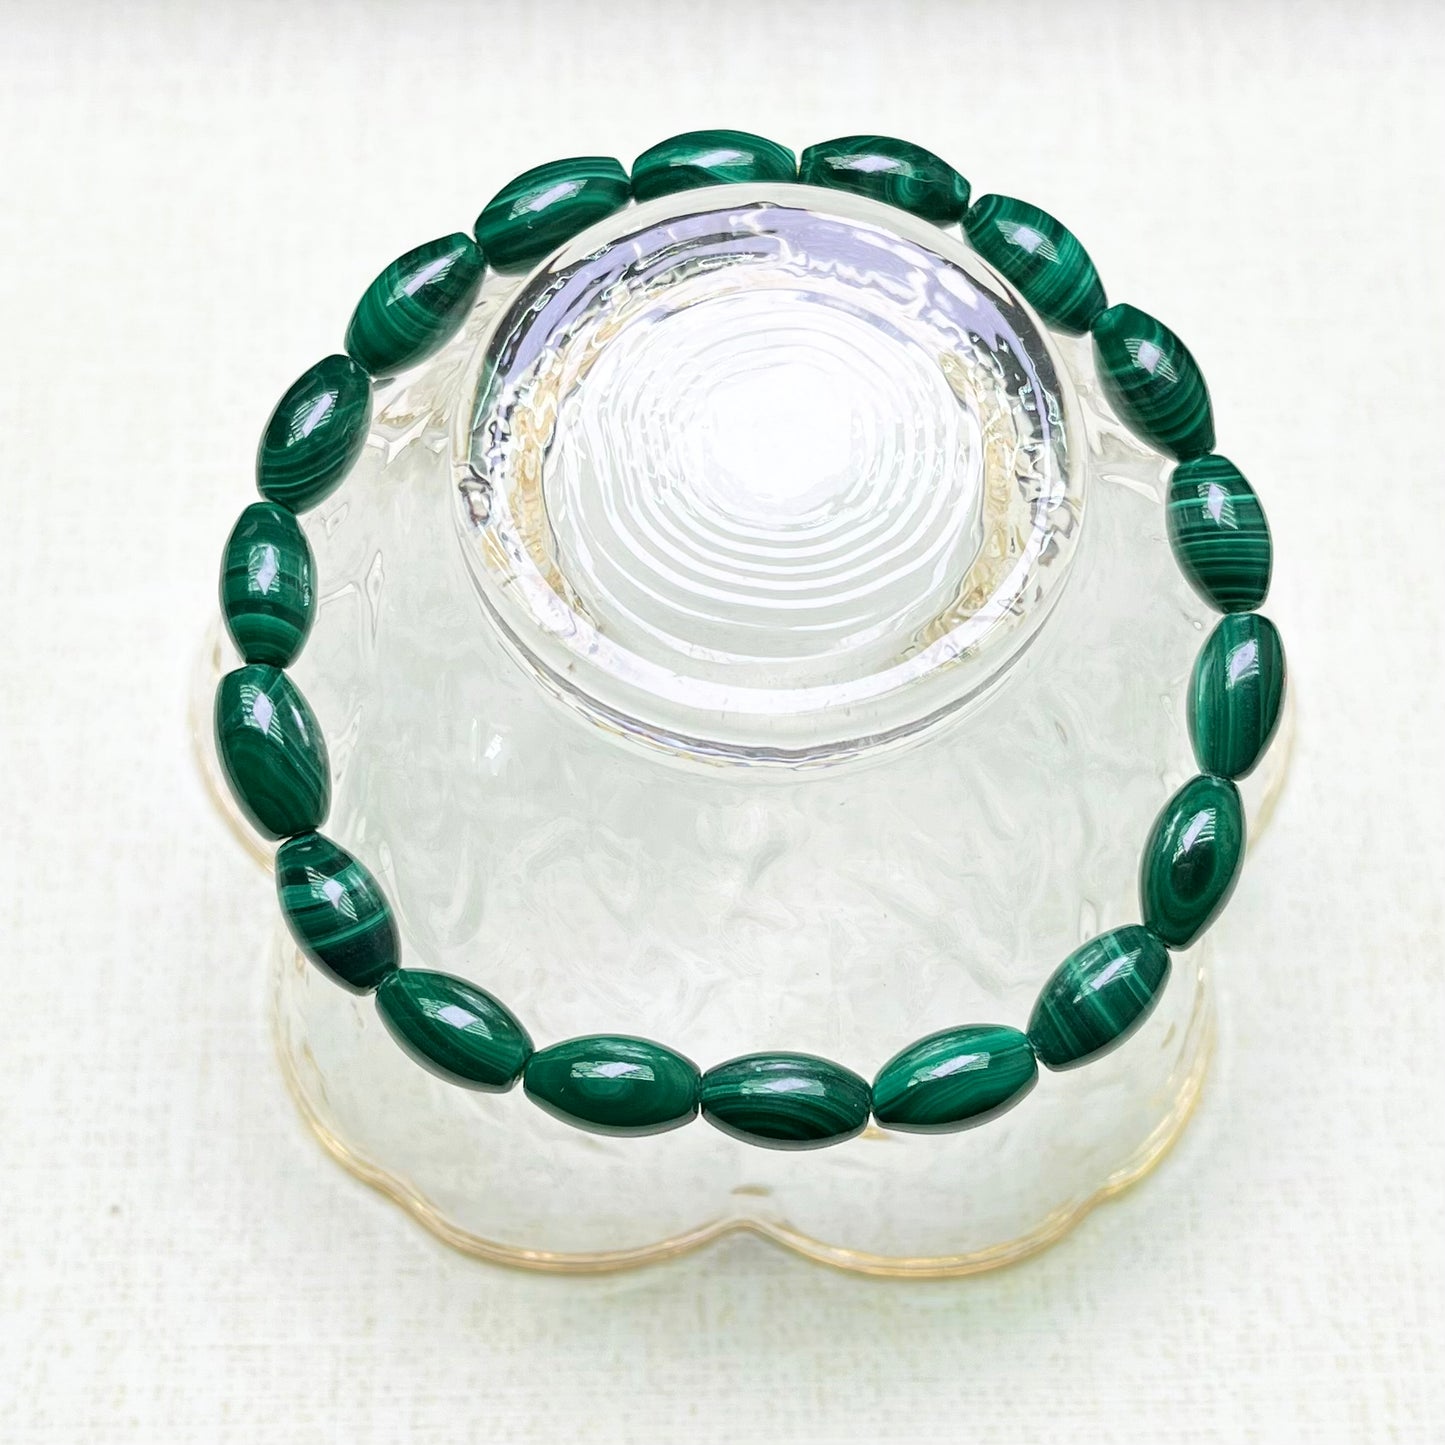 Malachite oval bracelet